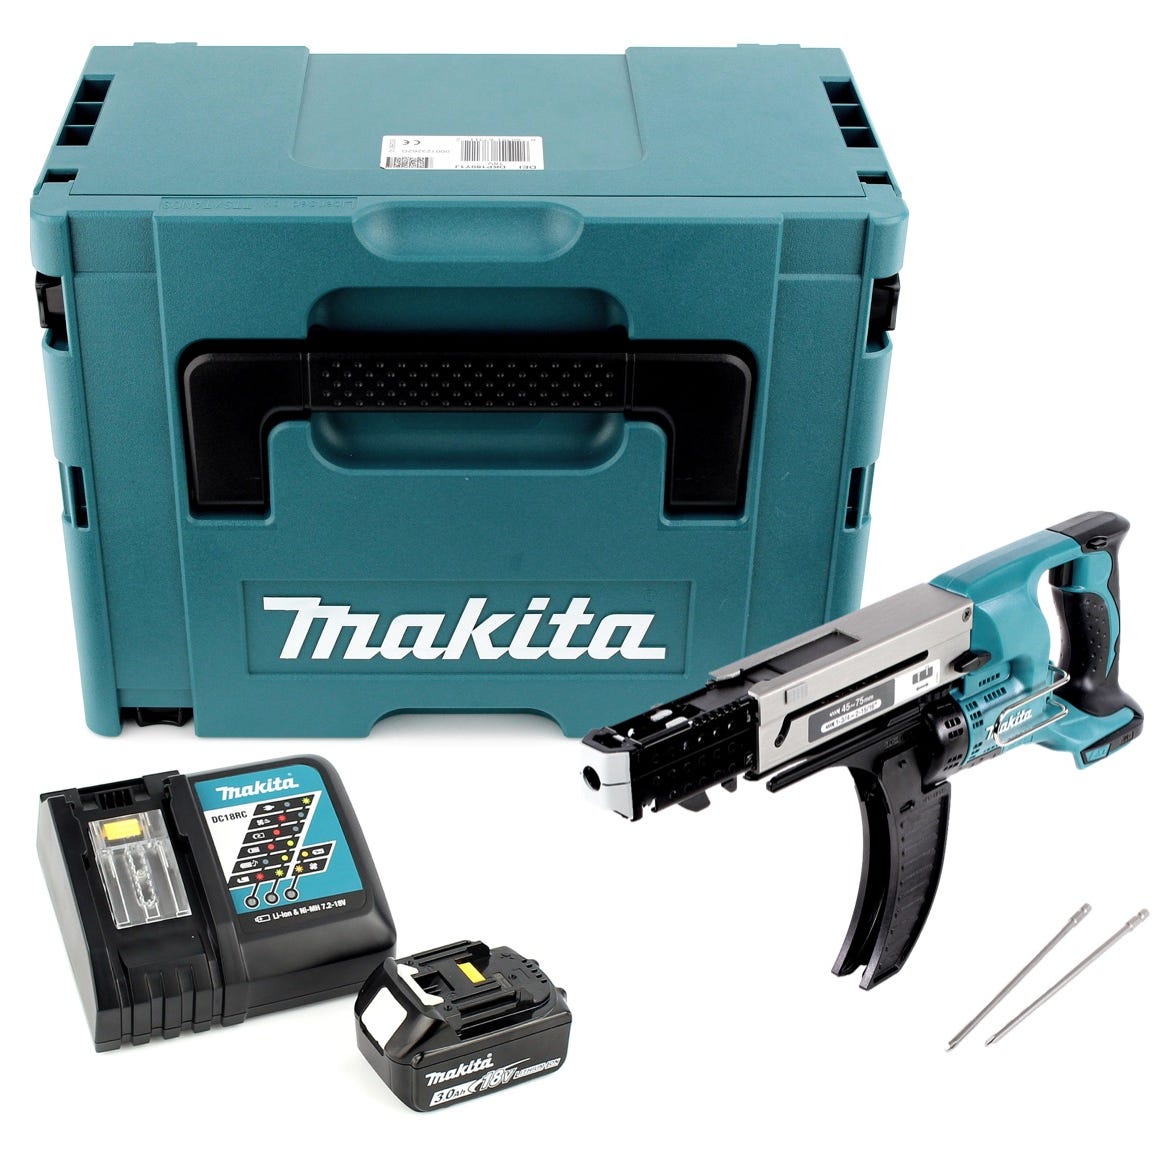 Makita DFR 750 RF1J Visseuse automatique à Magasin sans fil 18V 45-75mm + 1x Batterie 3,0Ah + Chargeur + Coffret Makpac 0